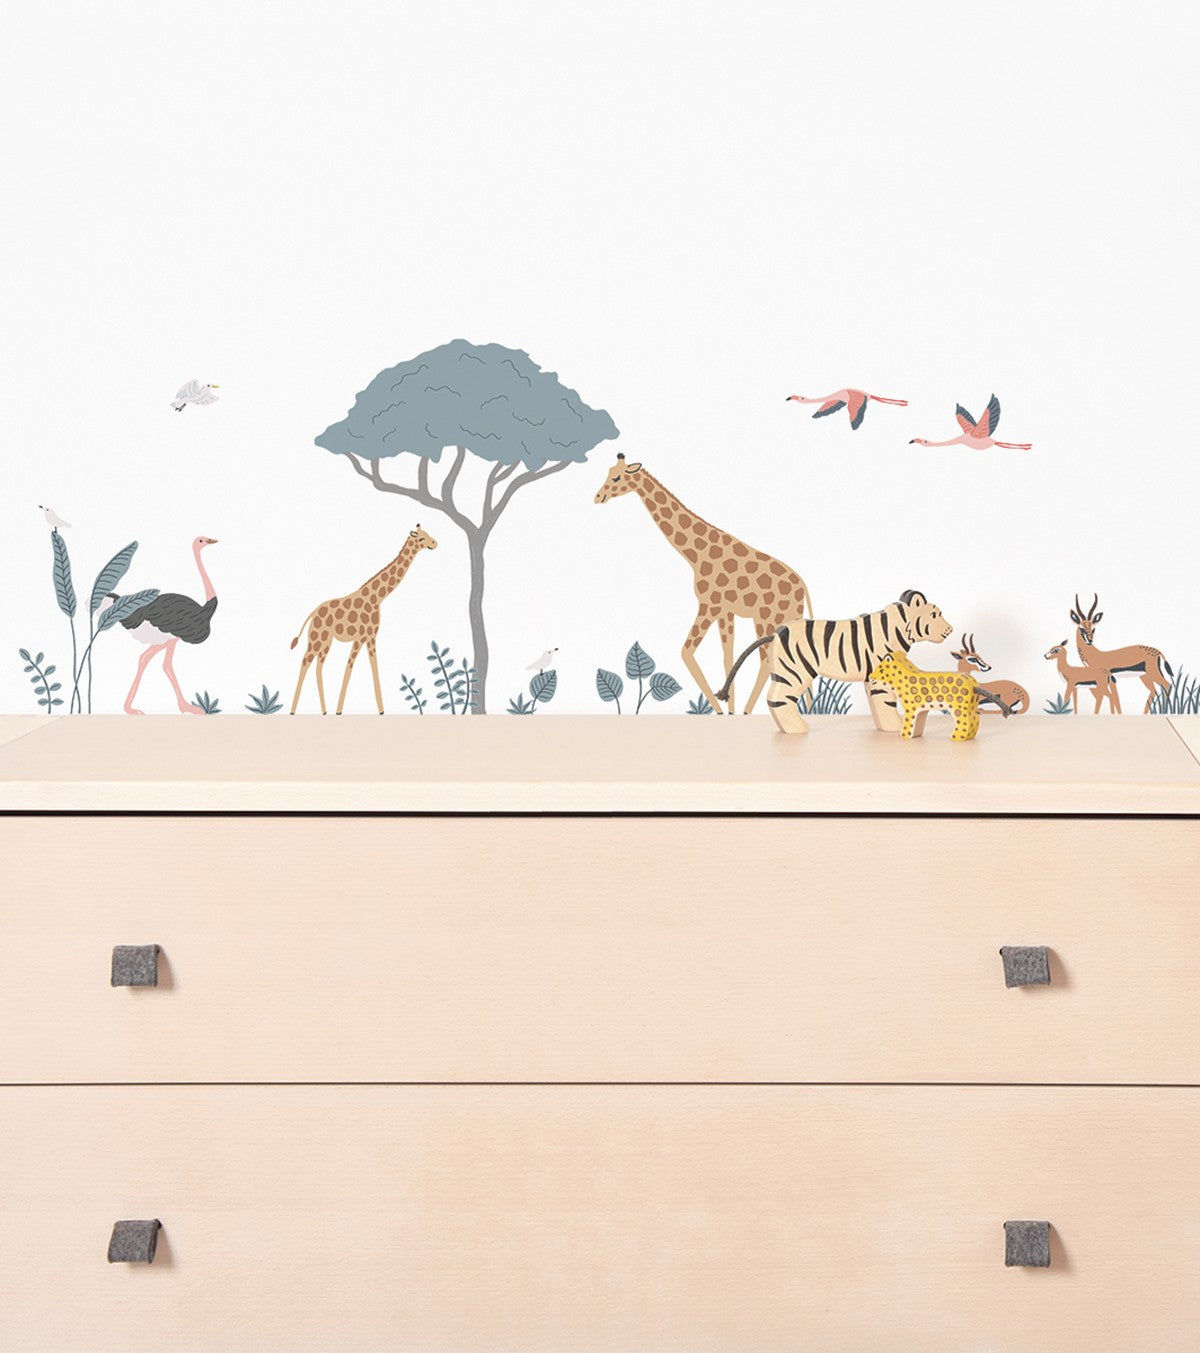 Stickers animaux savane - Girafe, gazelle, autruche - TANZIANIA